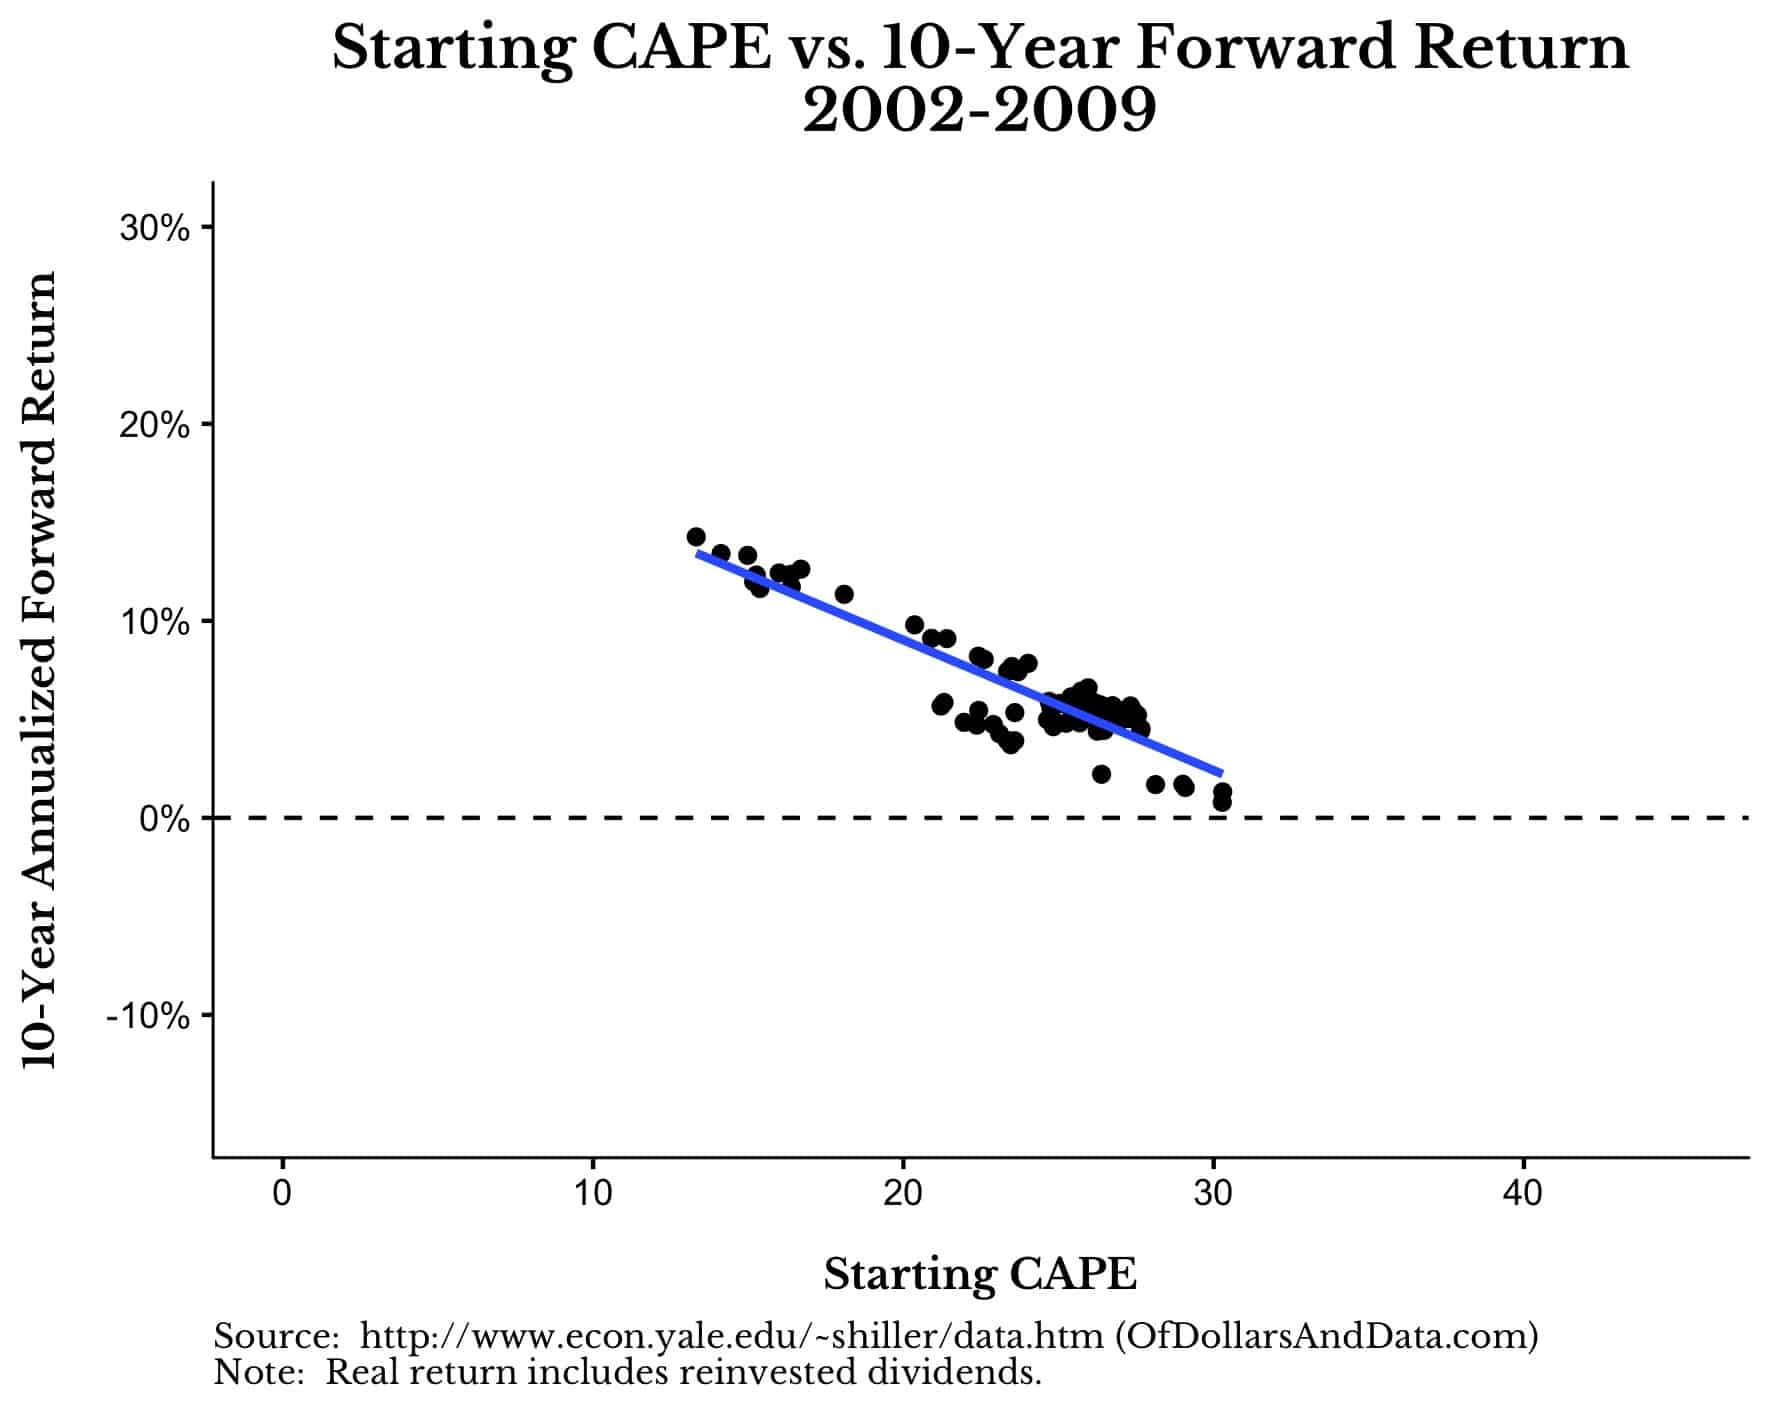 Starting CAPE vs 10-Year Forward Return for US Stocks, 2002-2009